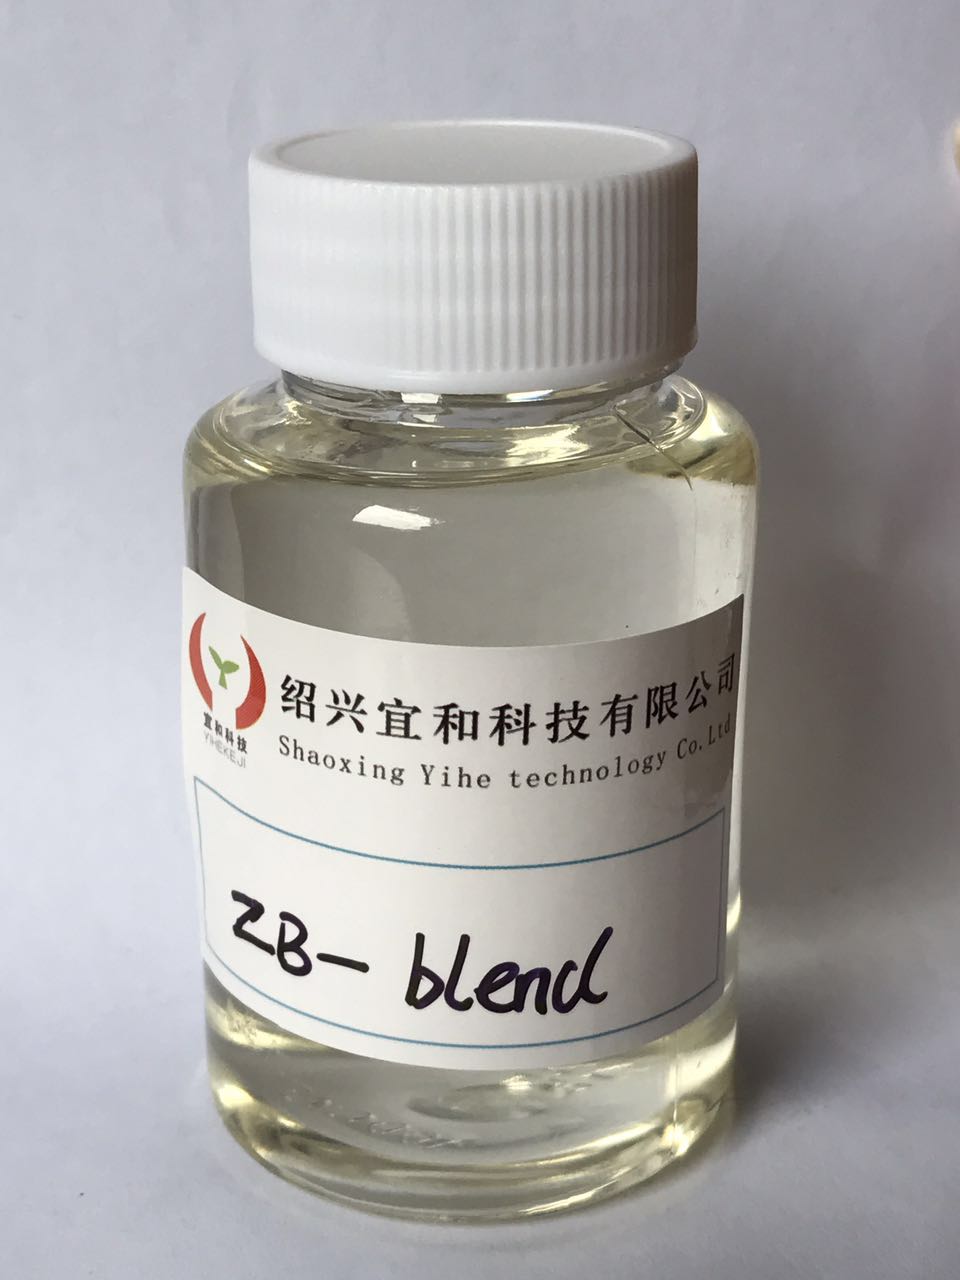 锌铋复合催化剂、聚氨酯环保催化剂图片